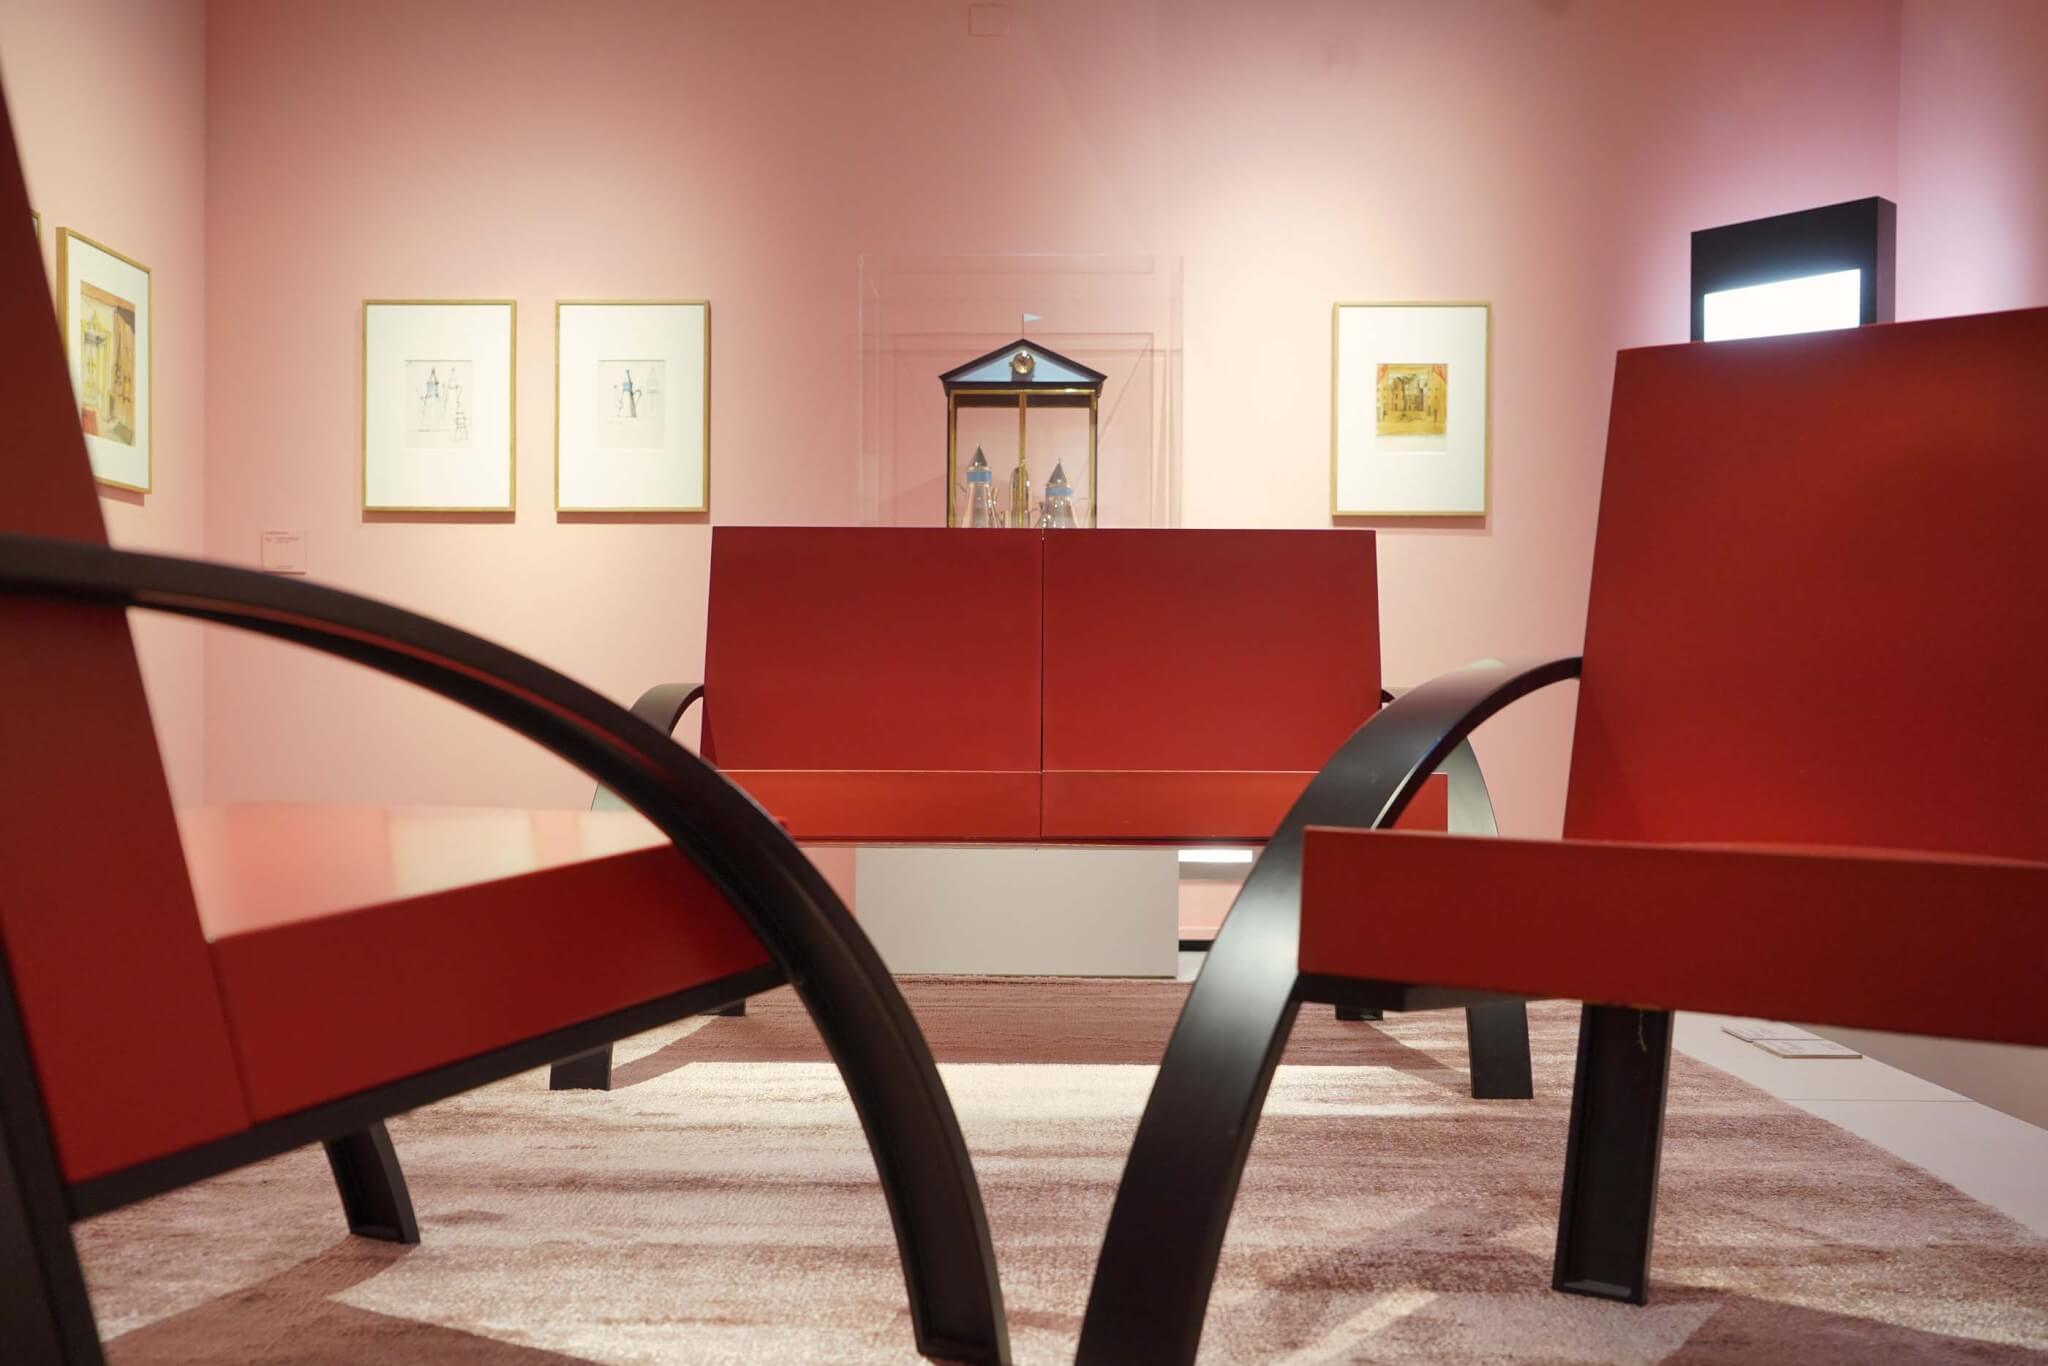 粉红色的展览空间里有红色的椅子